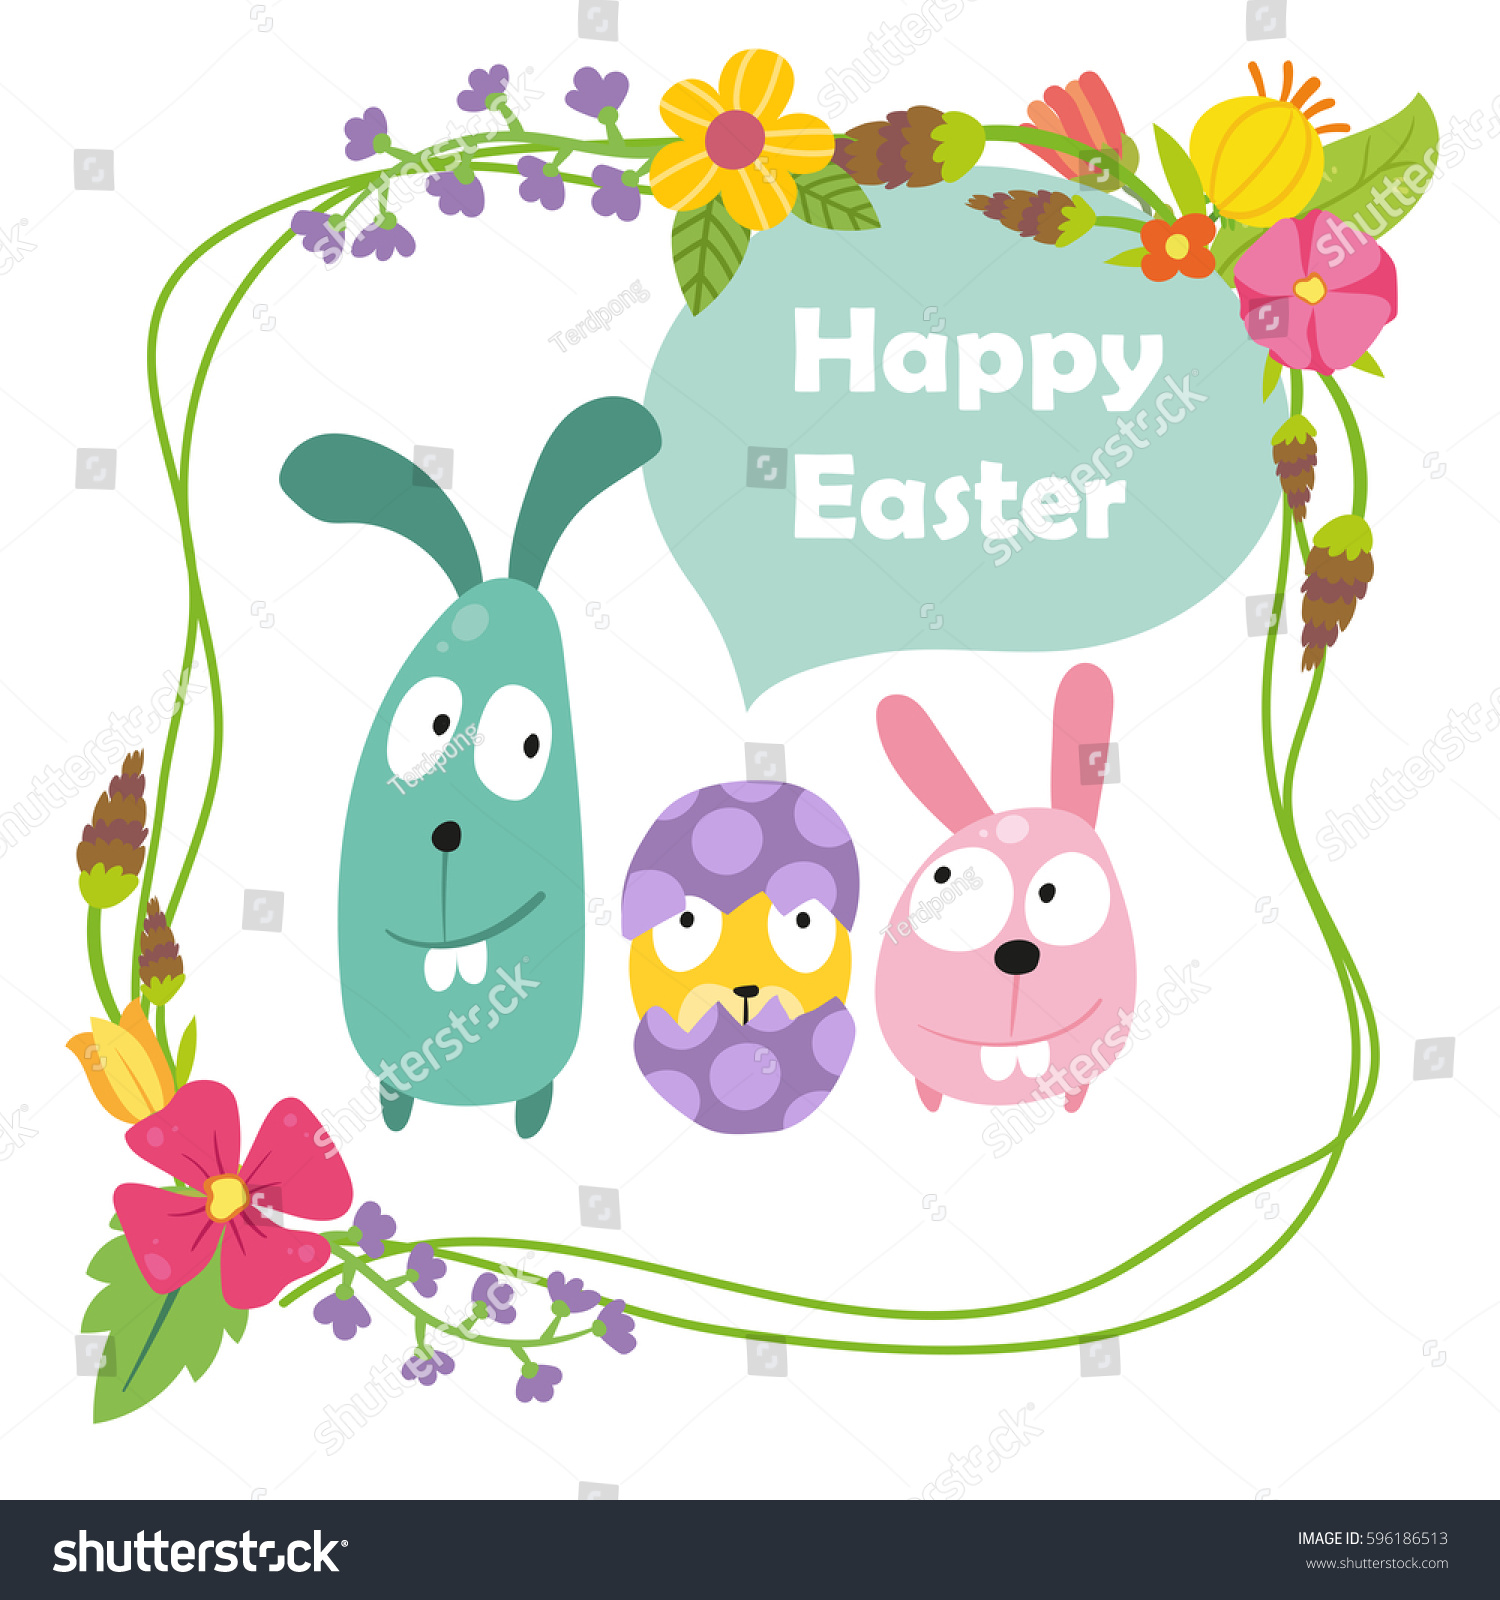 Easter Ornament Design Stock Vector 596186513 - Shutterstock